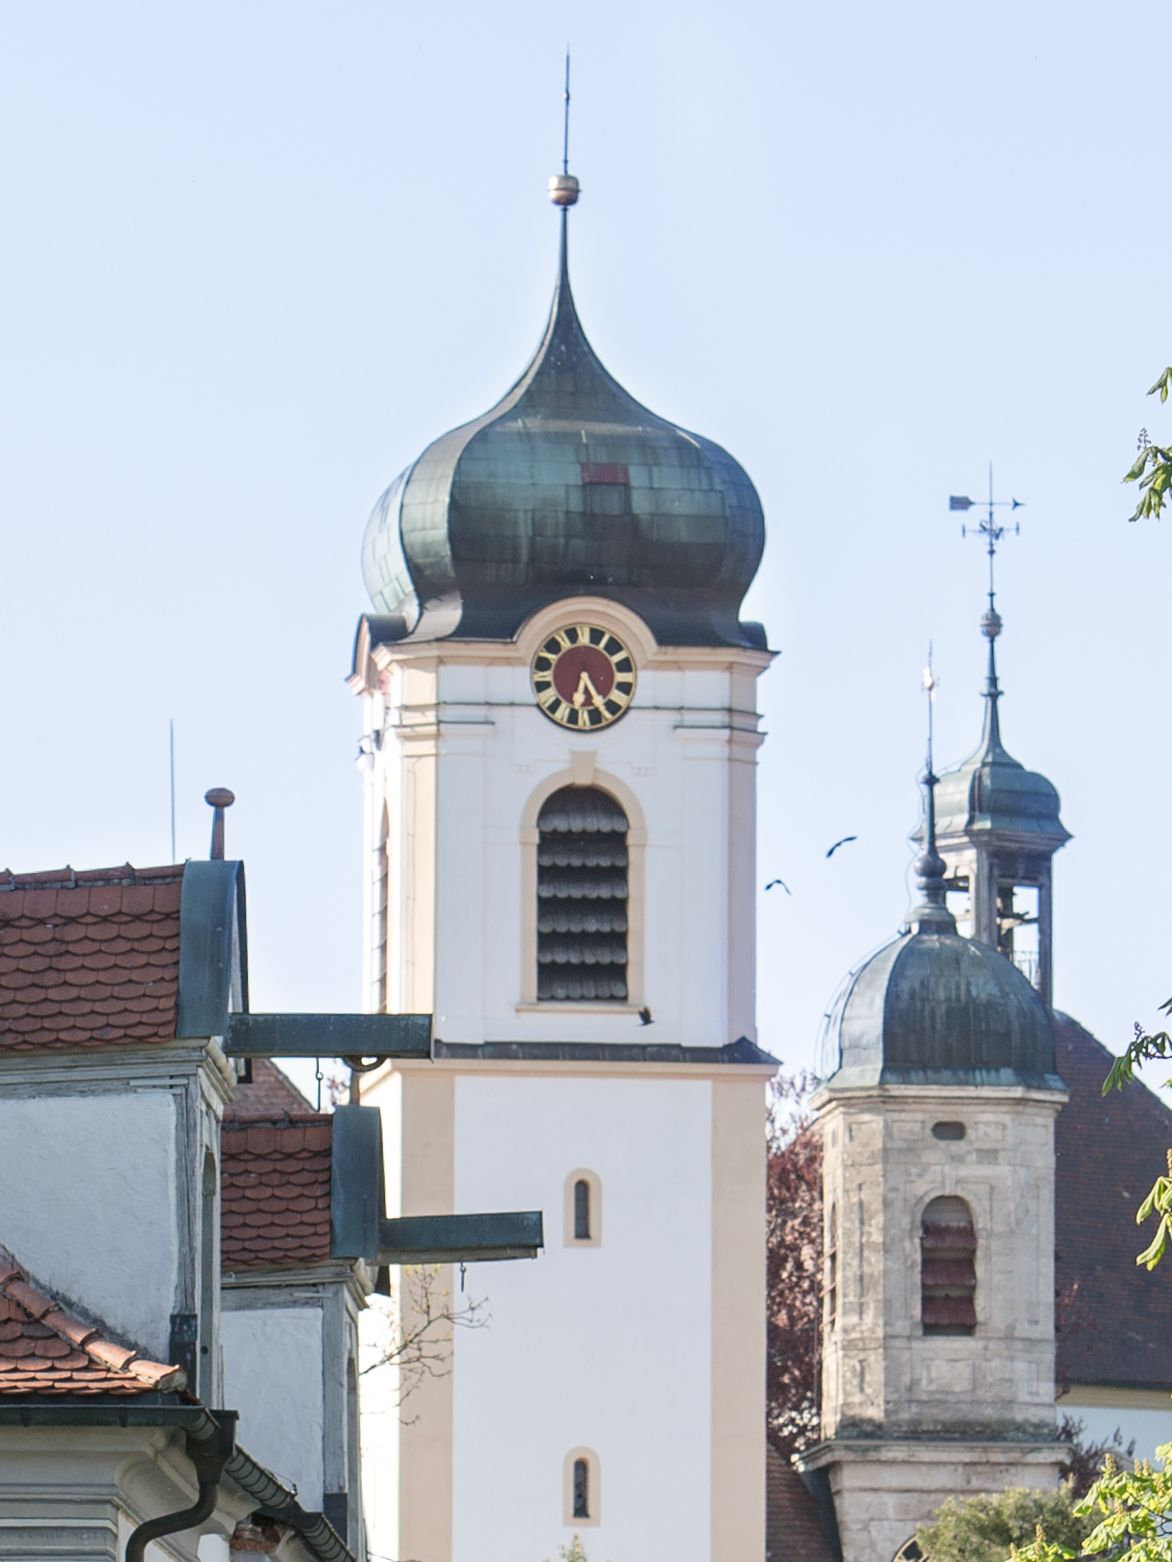   Kirchturm Wolfegg 